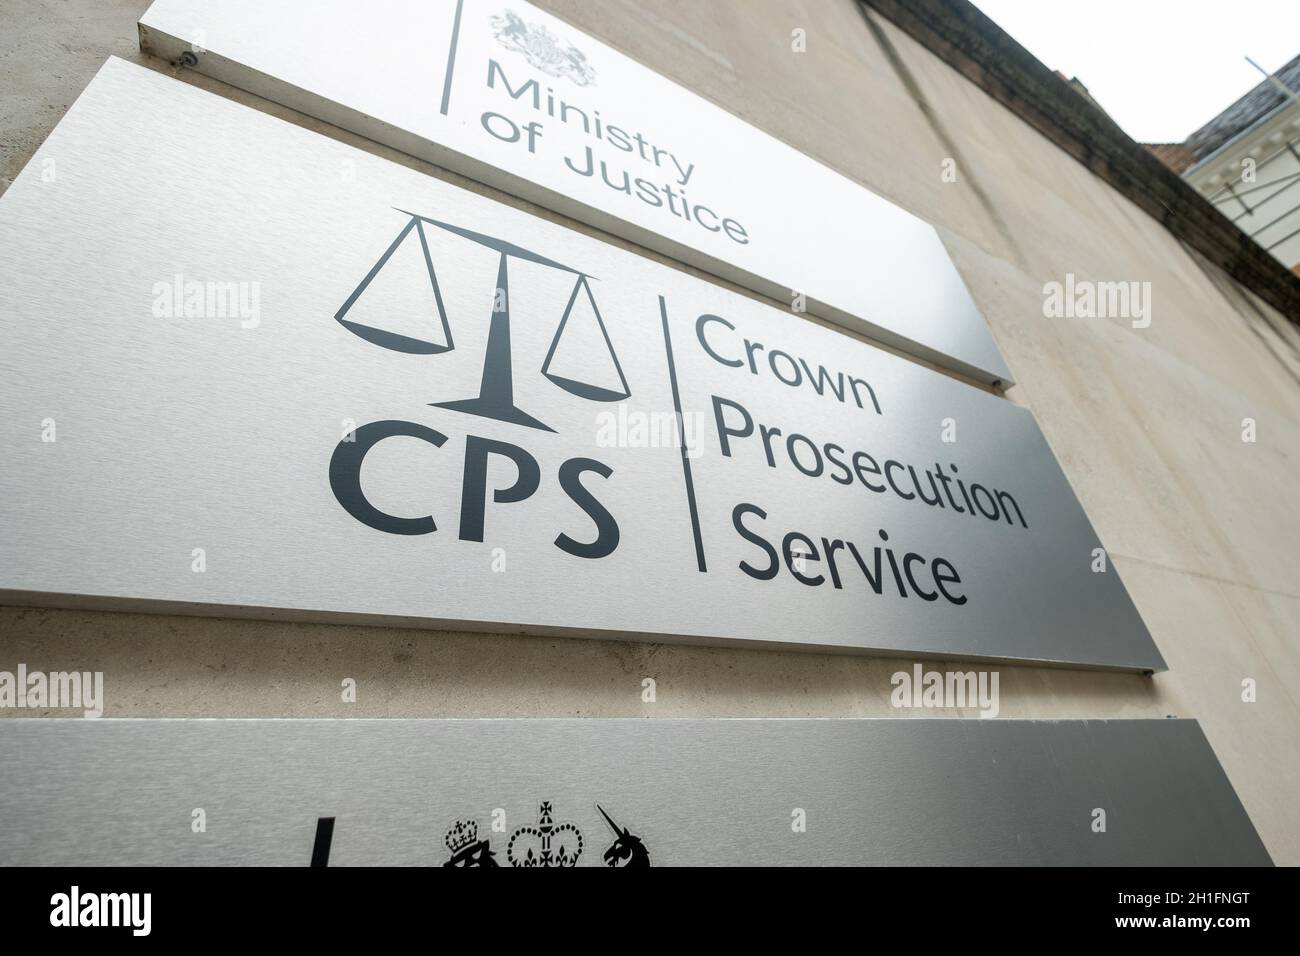 Westminster London - signalisation du Crown Prosecution Service.Bâtiment du gouvernement du Royaume-Uni Banque D'Images